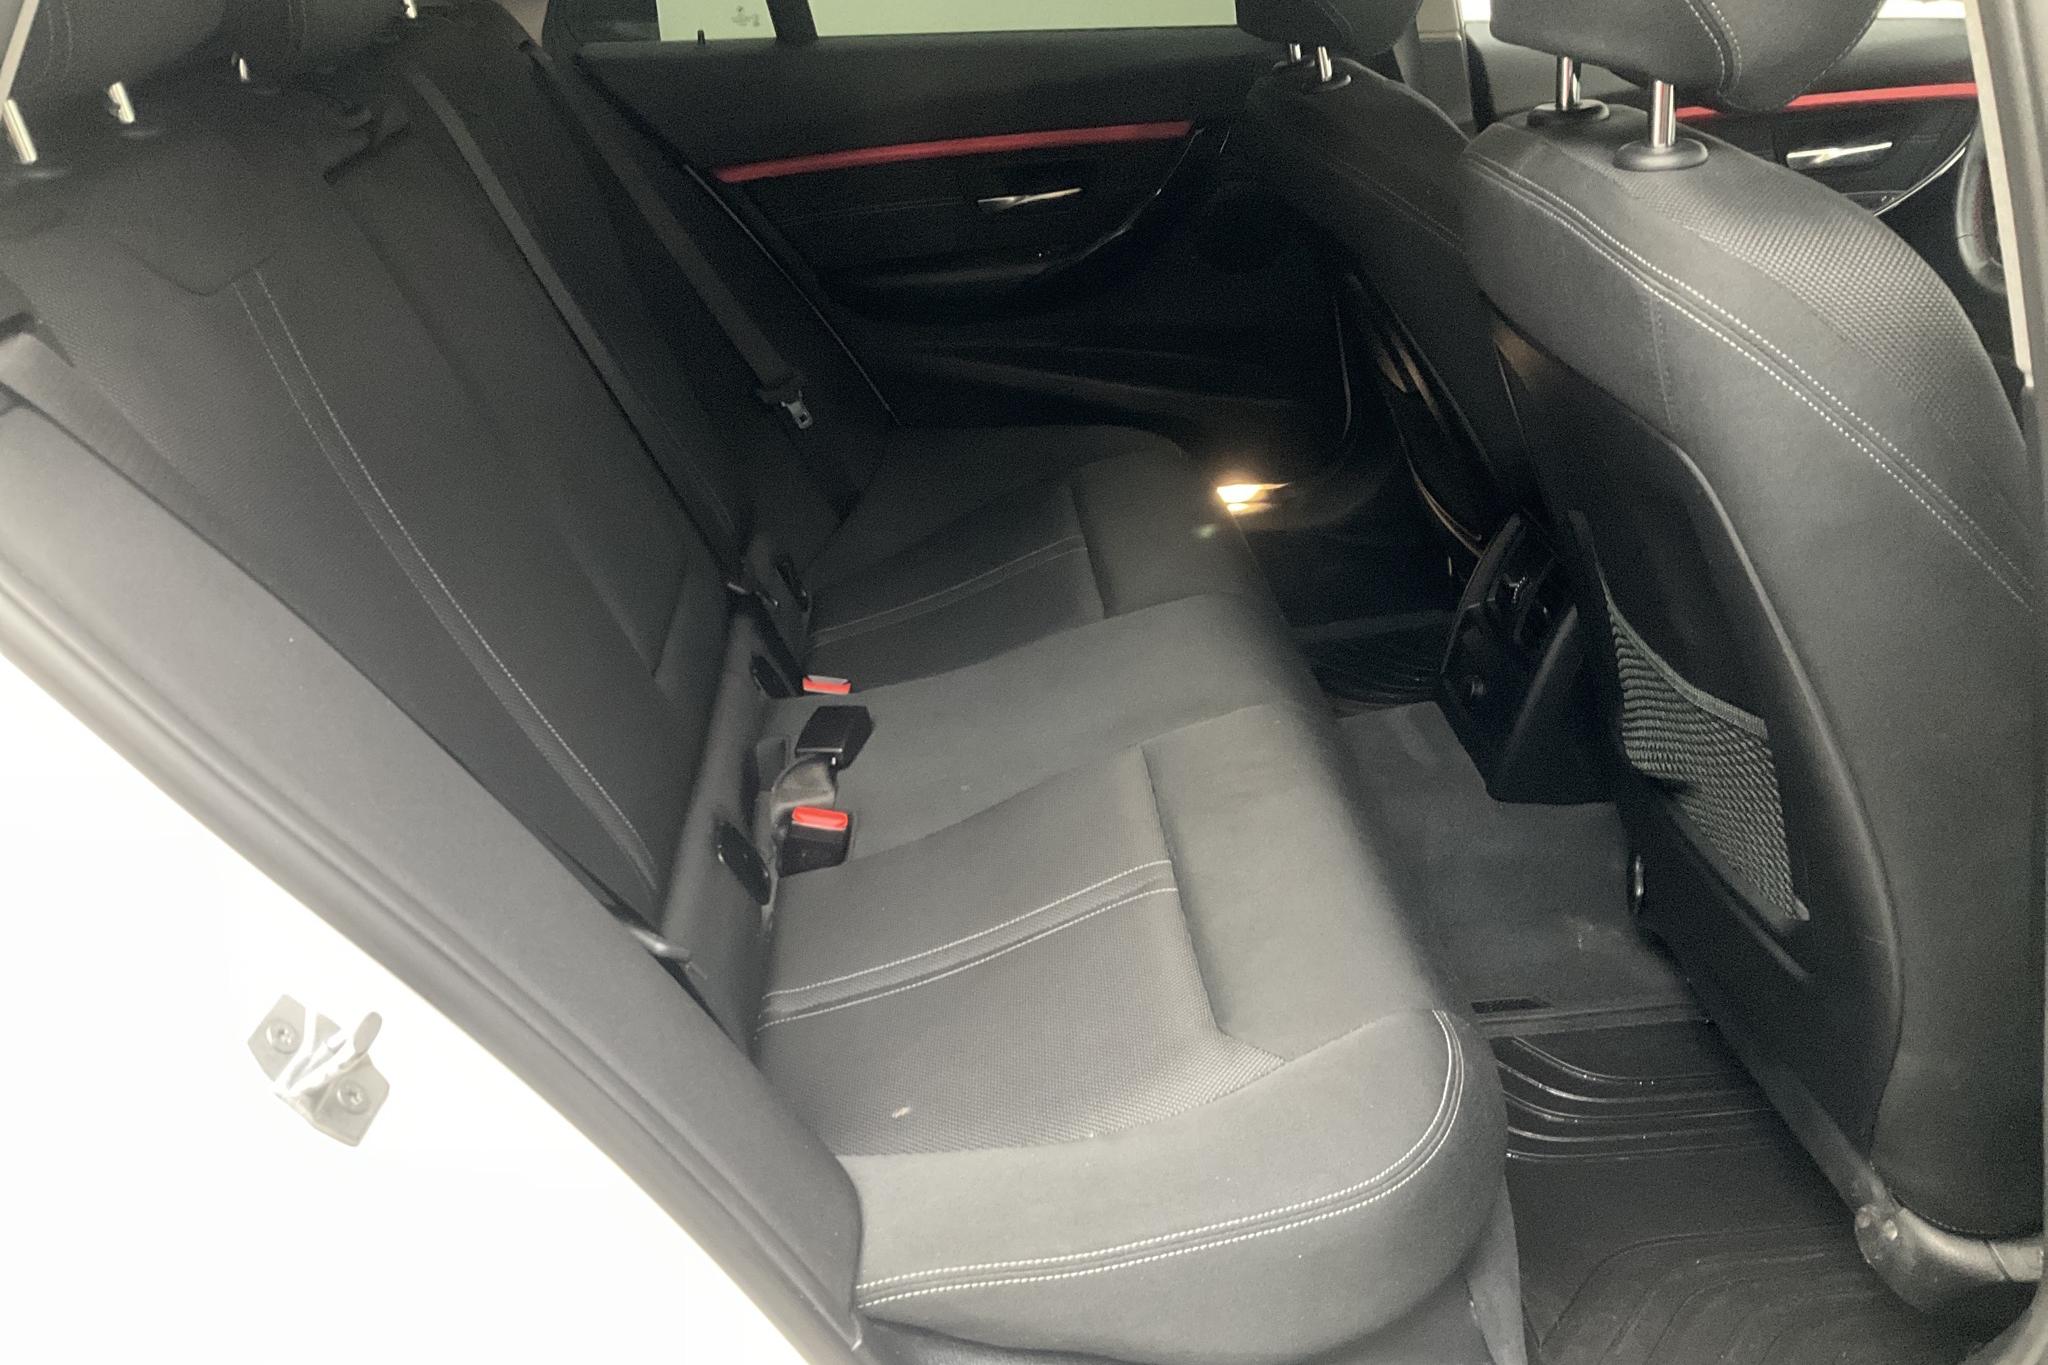 BMW 318d xDrive Touring, F31 (150hk) - 105 370 km - Manual - white - 2018